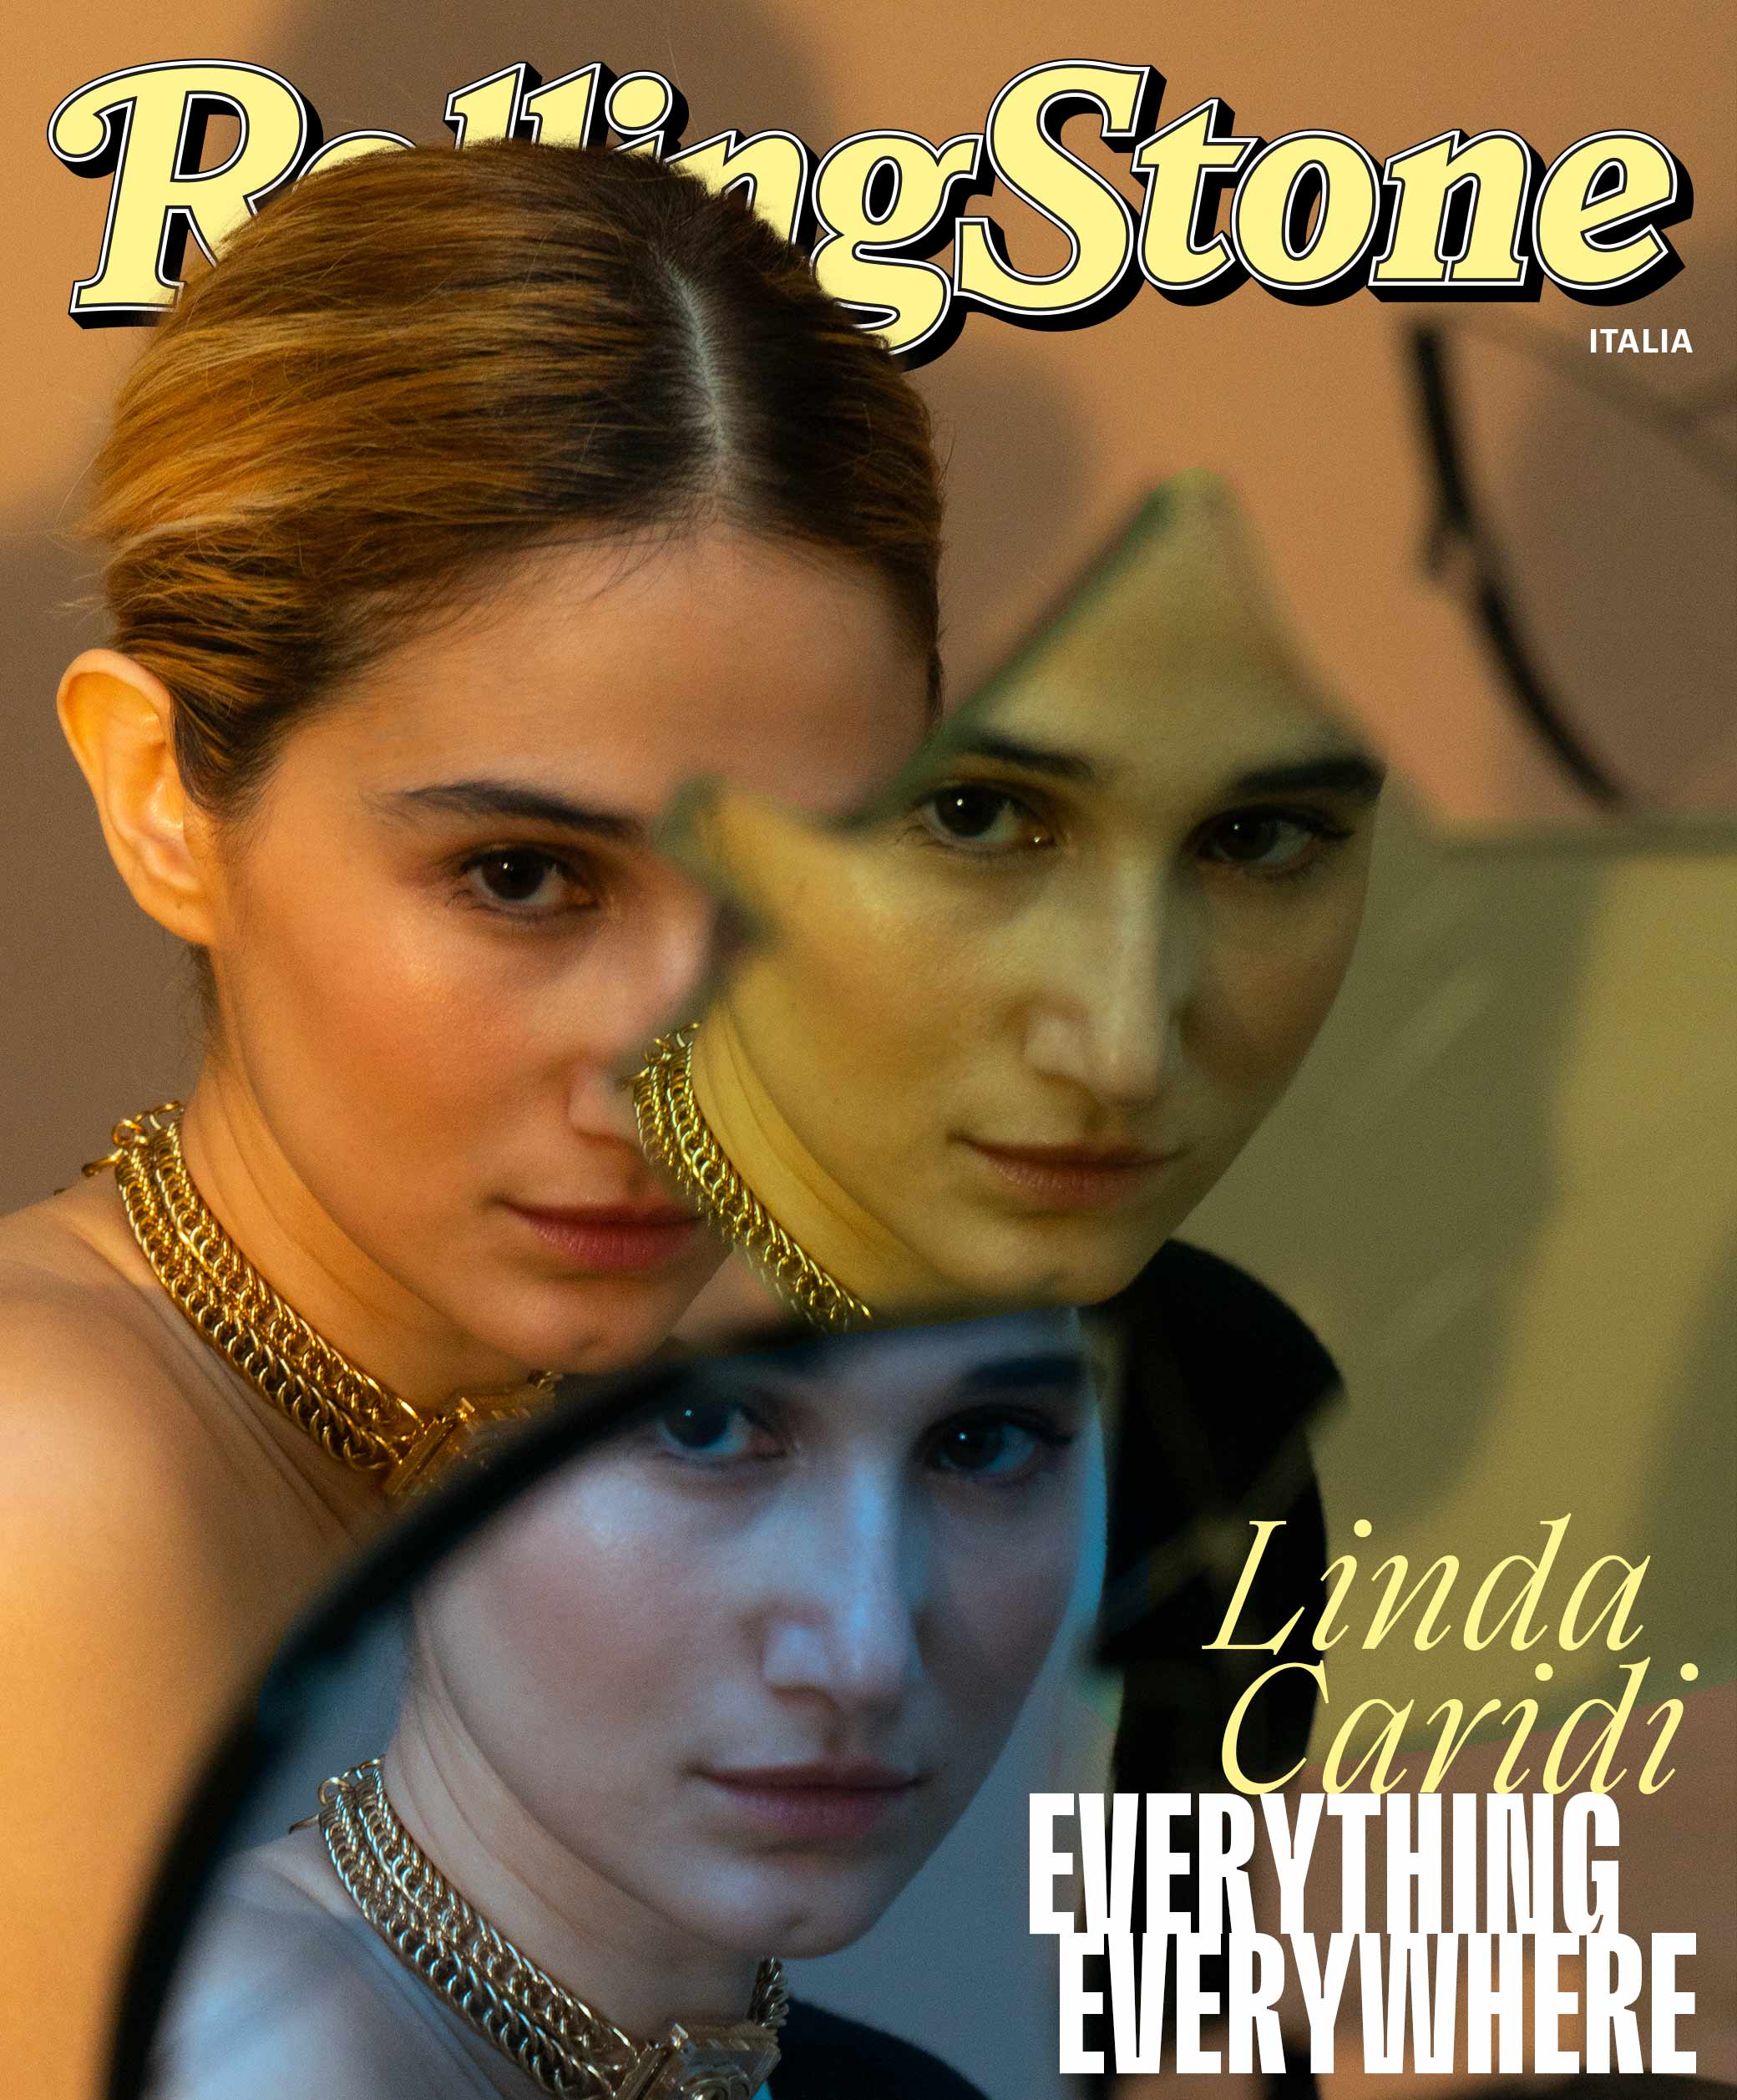 Linda Caridi sulla digital cover di Rolling Stone Italia